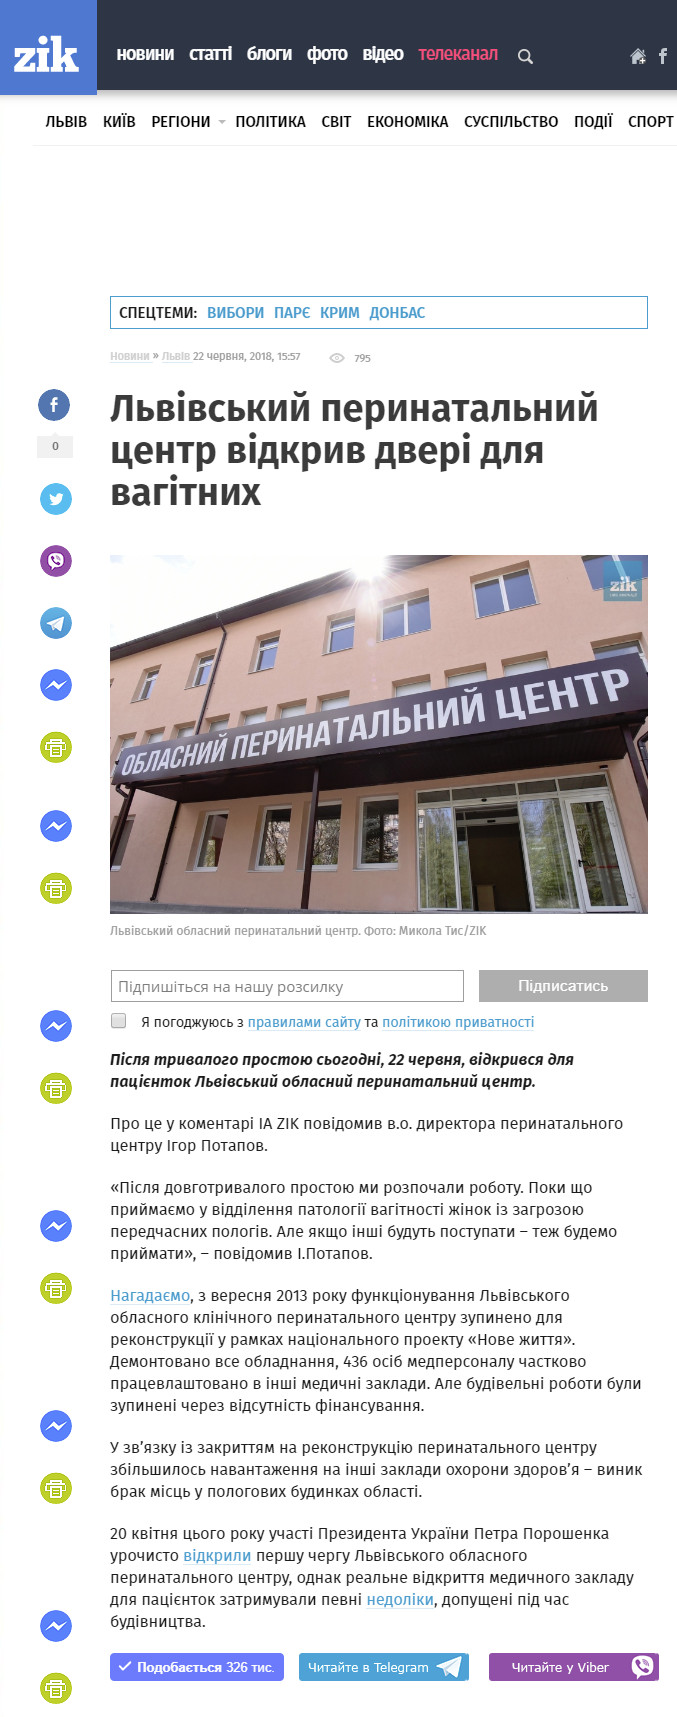 https://zik.ua/news/2018/06/22/lvivskyy_perynatalnyy_tsentr_vidkryv_dveri_dlya_vagitnyh_1351875